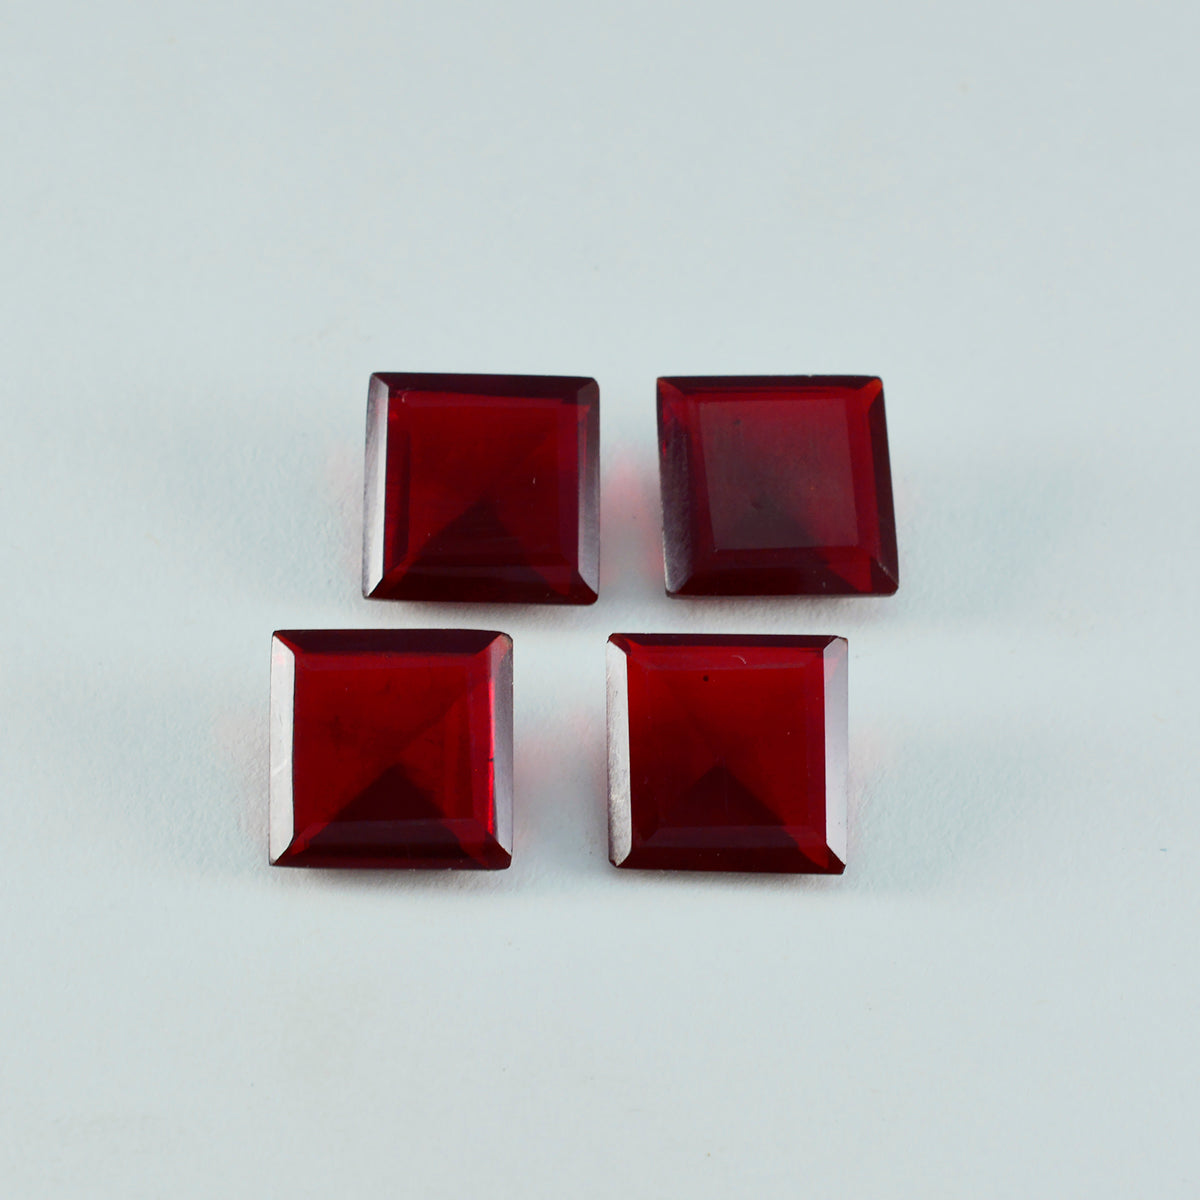 Riyogems 1 Stück roter Rubin mit CZ, facettiert, 15 x 15 mm, quadratische Form, süßer Qualitätsstein